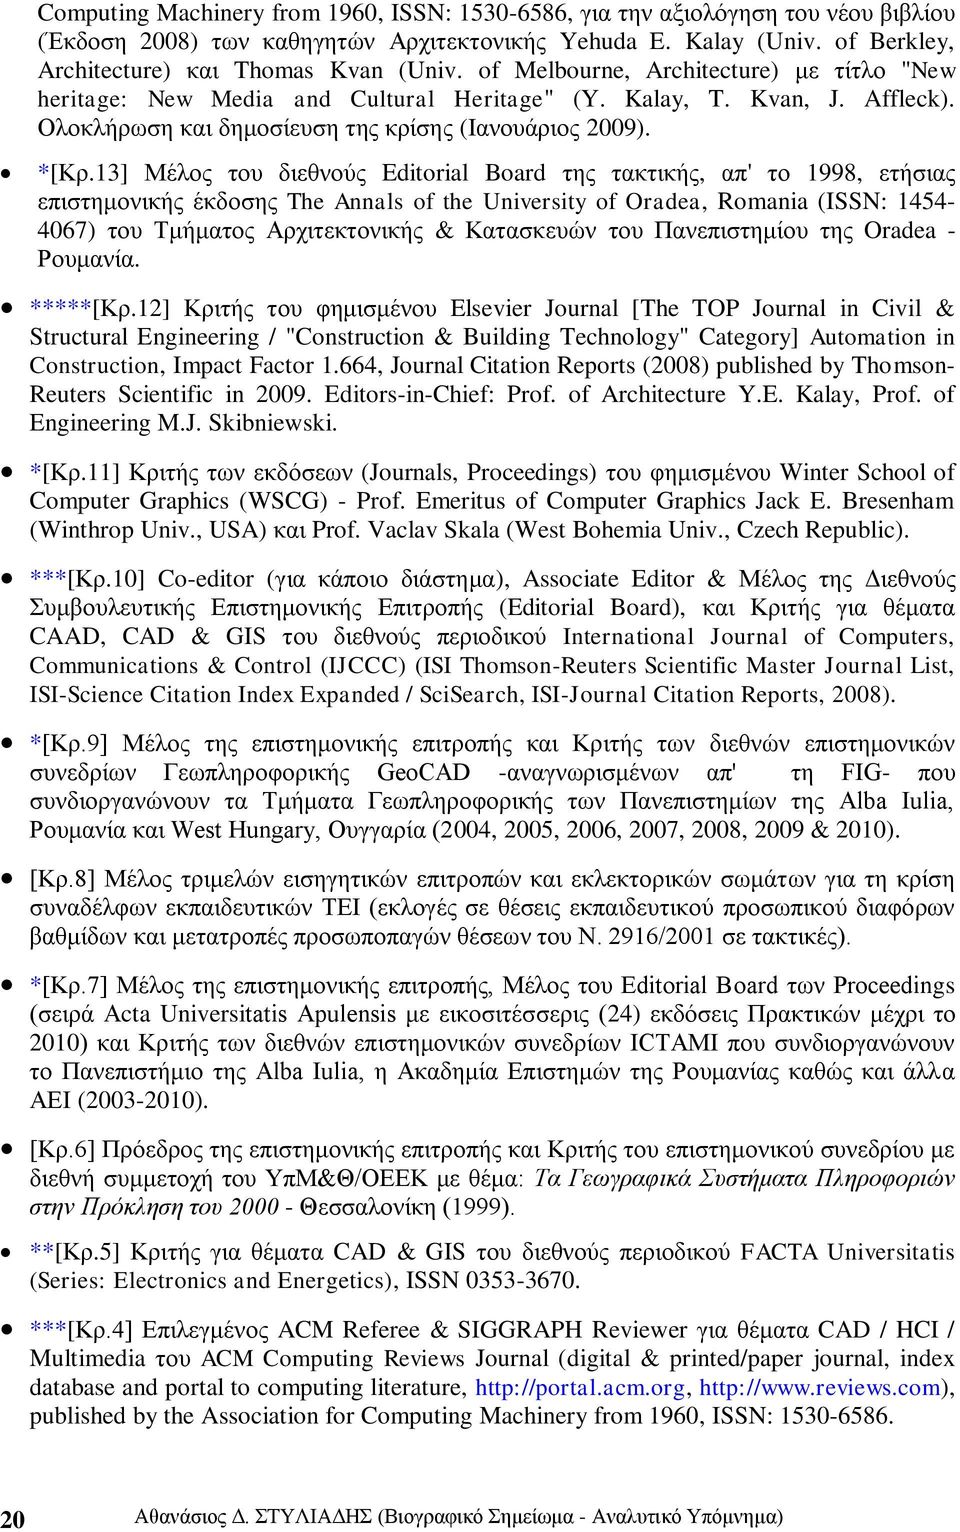 13] Μέινο ηνπ δηεζλνχο Editorial Board ηεο ηαθηηθήο, απ' ην 1998, εηήζηαο επηζηεκνληθήο έθδνζεο The Annals of the University of Oradea, Romania (ISSN: 1454-4067) ηνπ Σκήκαηνο Αξρηηεθηνληθήο &